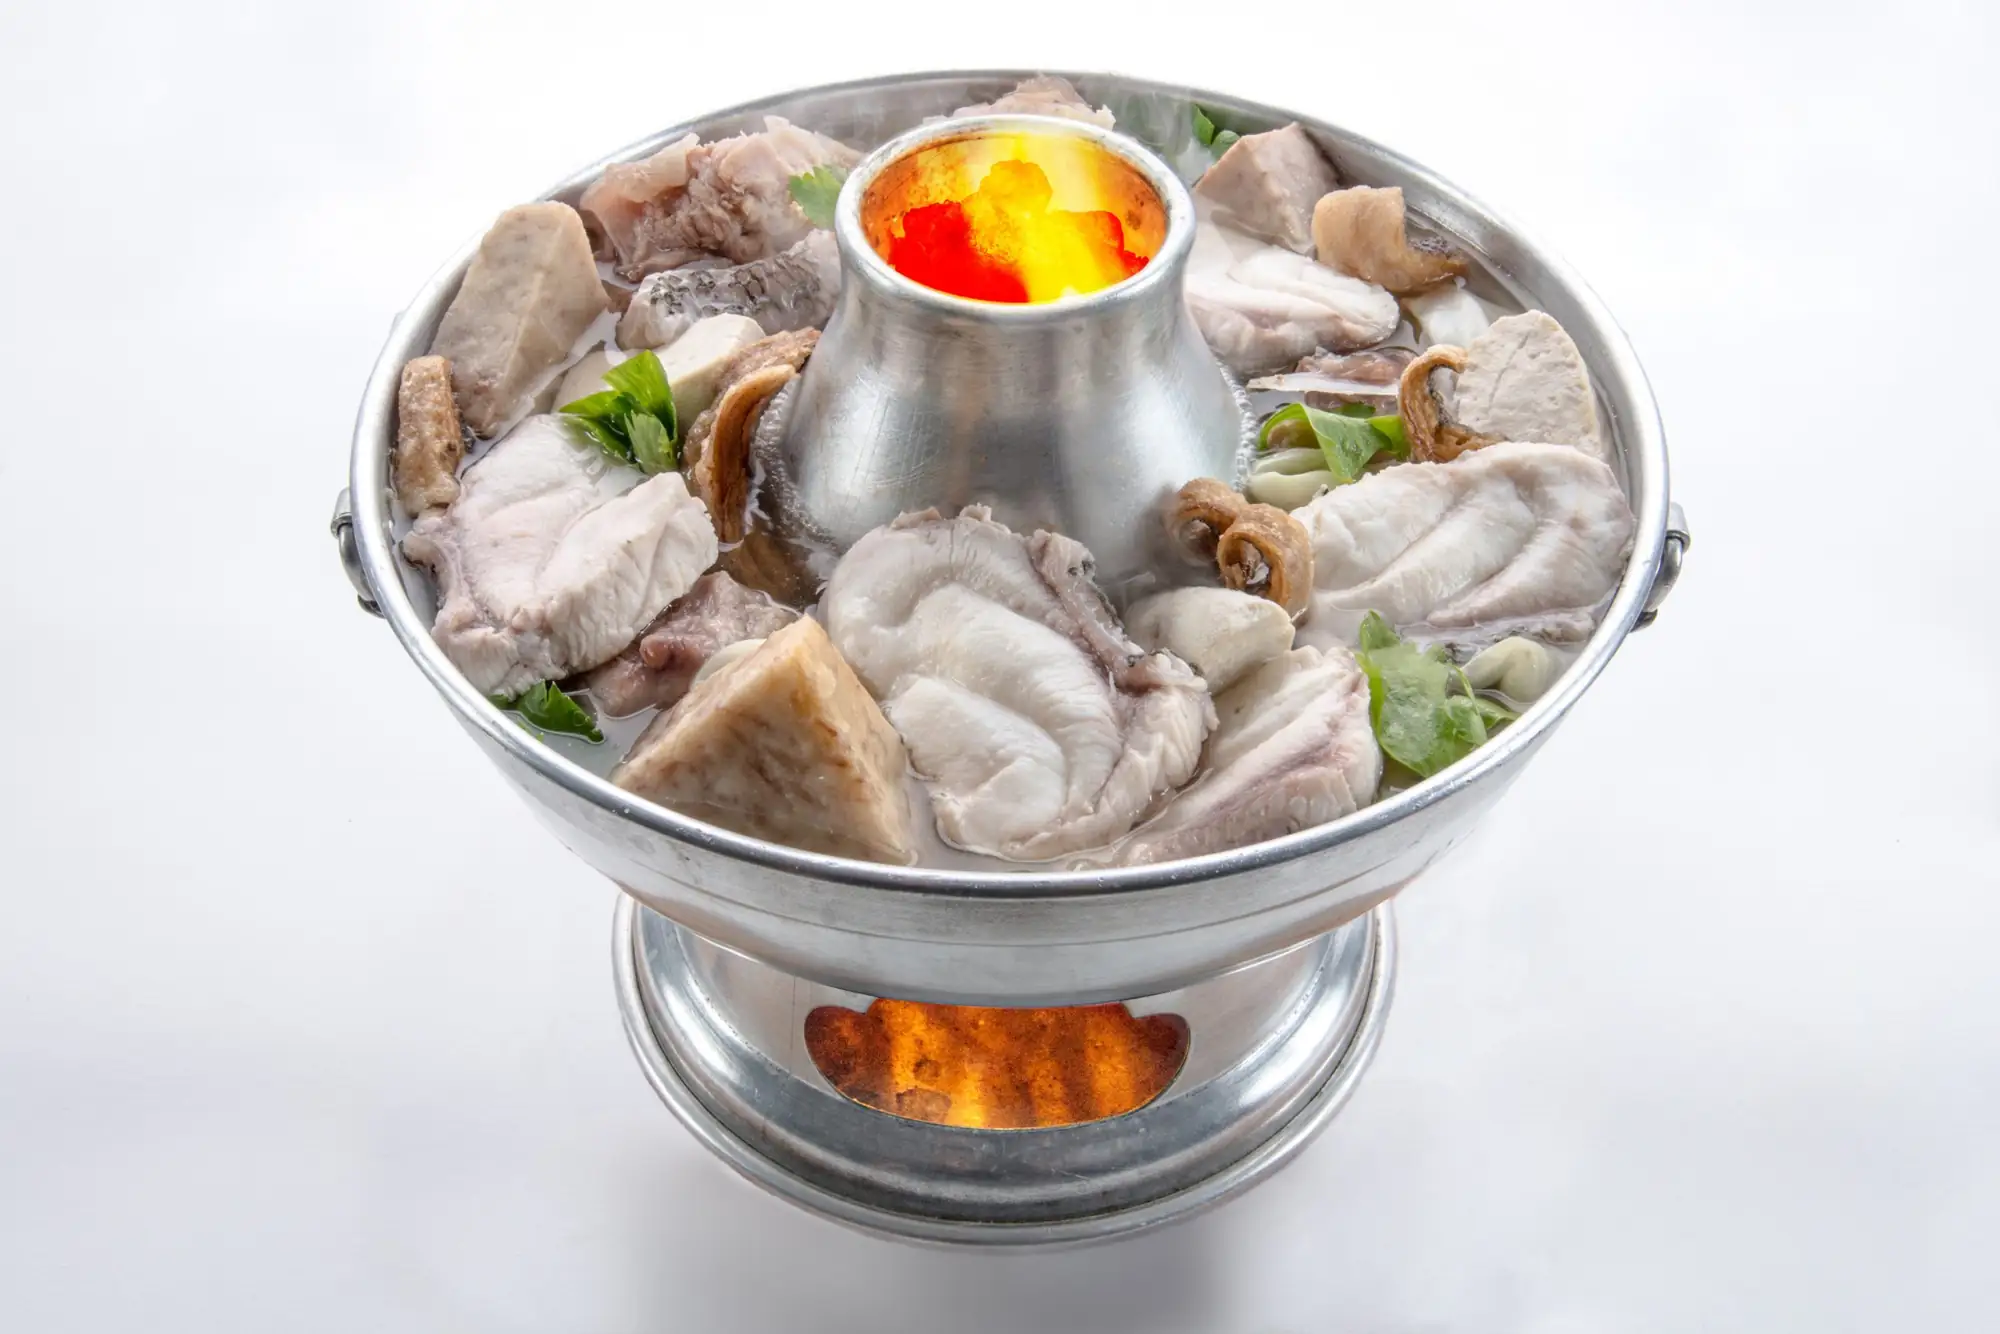 泰國魚頭爐HuaplaChongnonsea的招牌菜就是這一鍋料多湯頭鮮美的魚頭爐